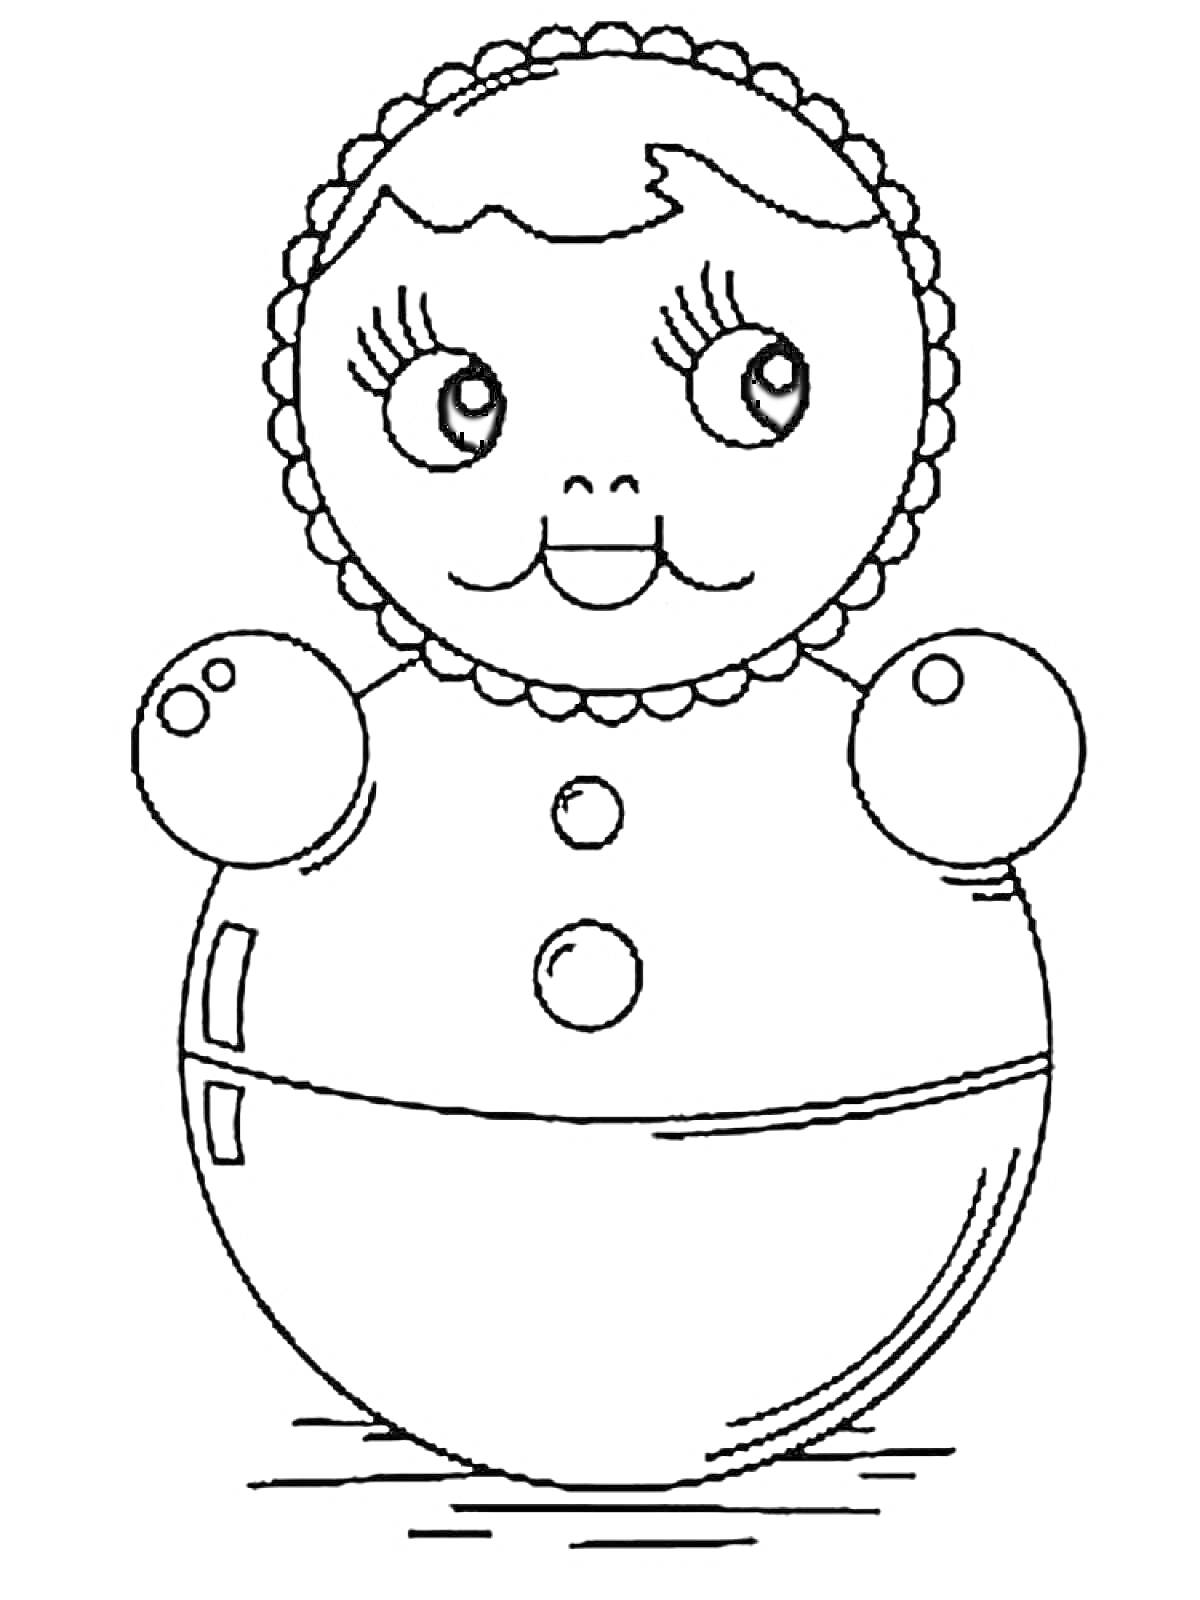 Раскраска Неваляшка с круглой головой, улыбающимся лицом, глазками и румяными щёчками, в цветочном ободке, с двумя пуговицами на теле